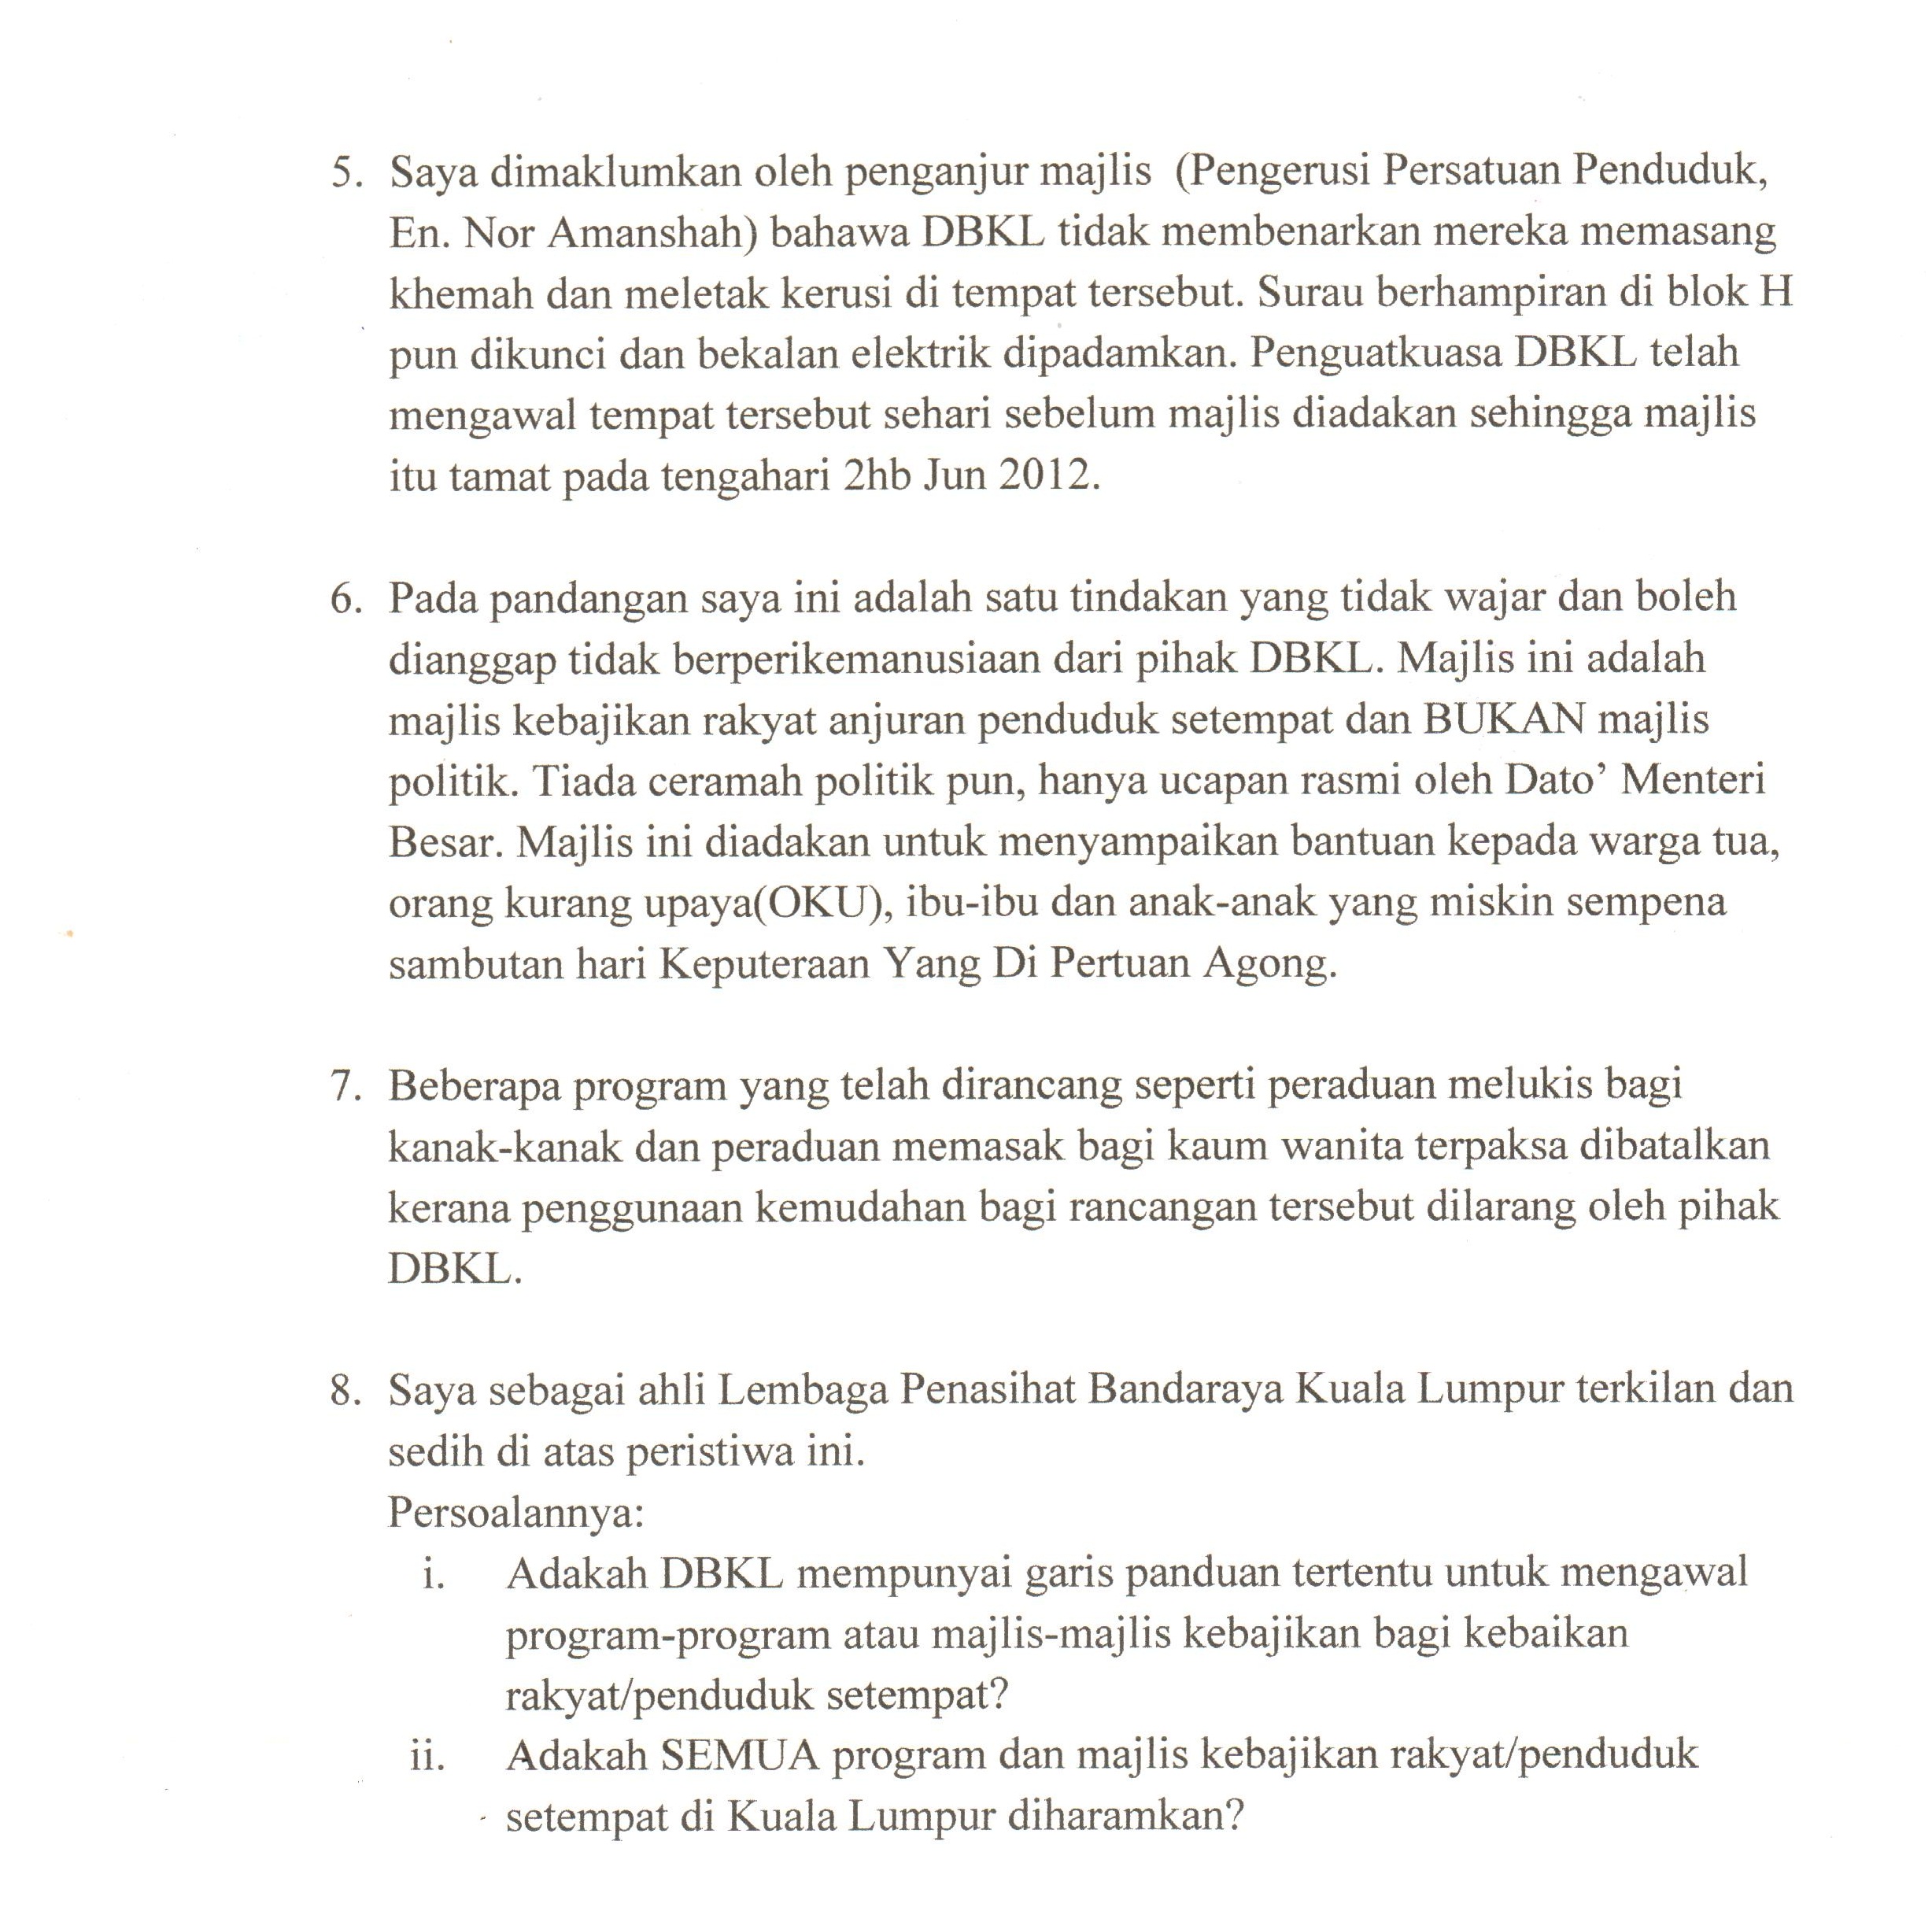 Berikut adalah surat Dr. Idris Bin Ahmad kepada Tan Sri Ahmad Fuad Bin